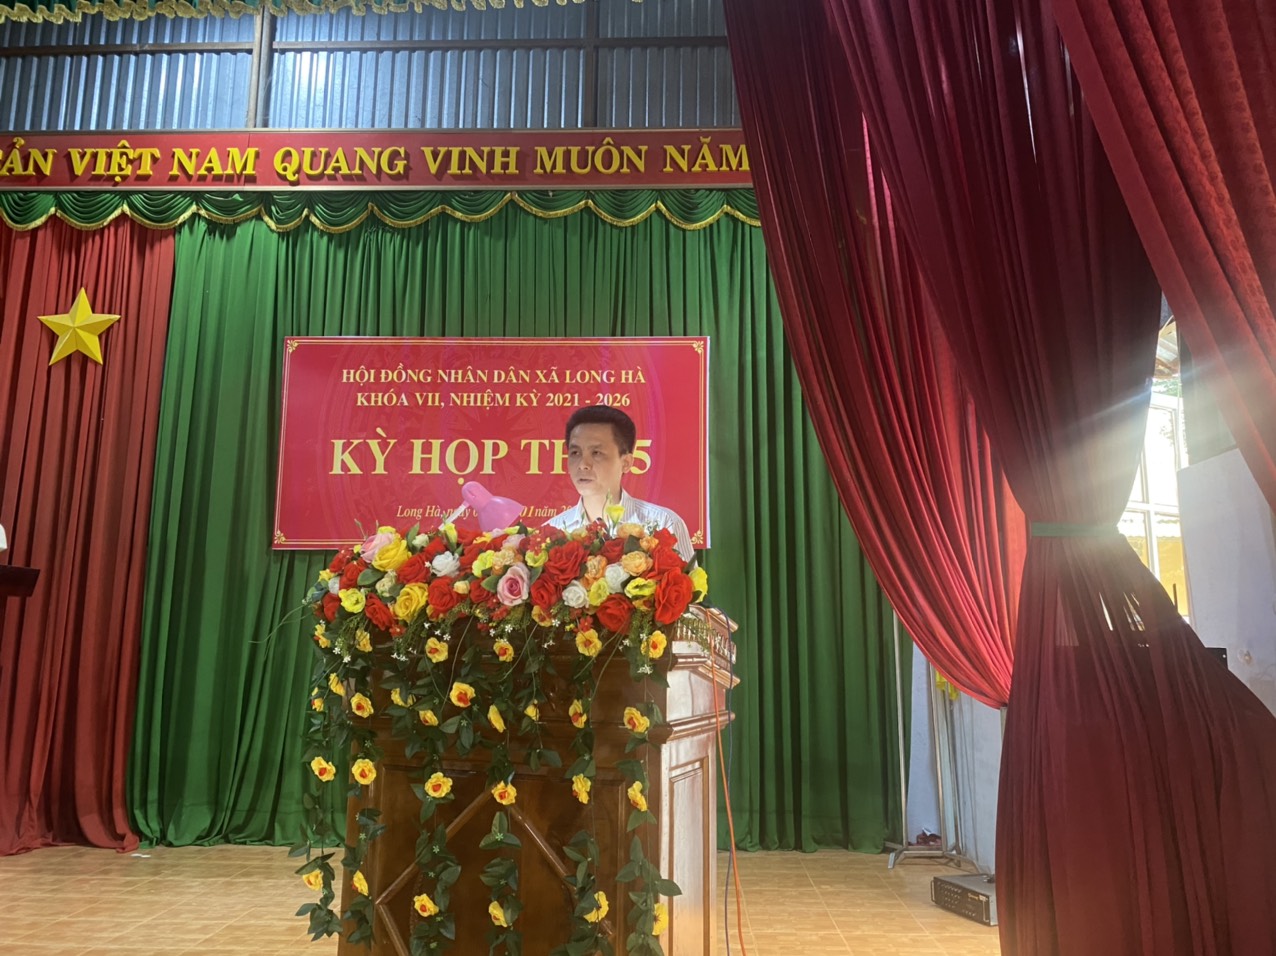 Hội đồng nhân dân xã Long Hà tổ chức kỳ họp thứ 5 HĐND xã khóa VII nhiệm kỳ 2021 - 2026